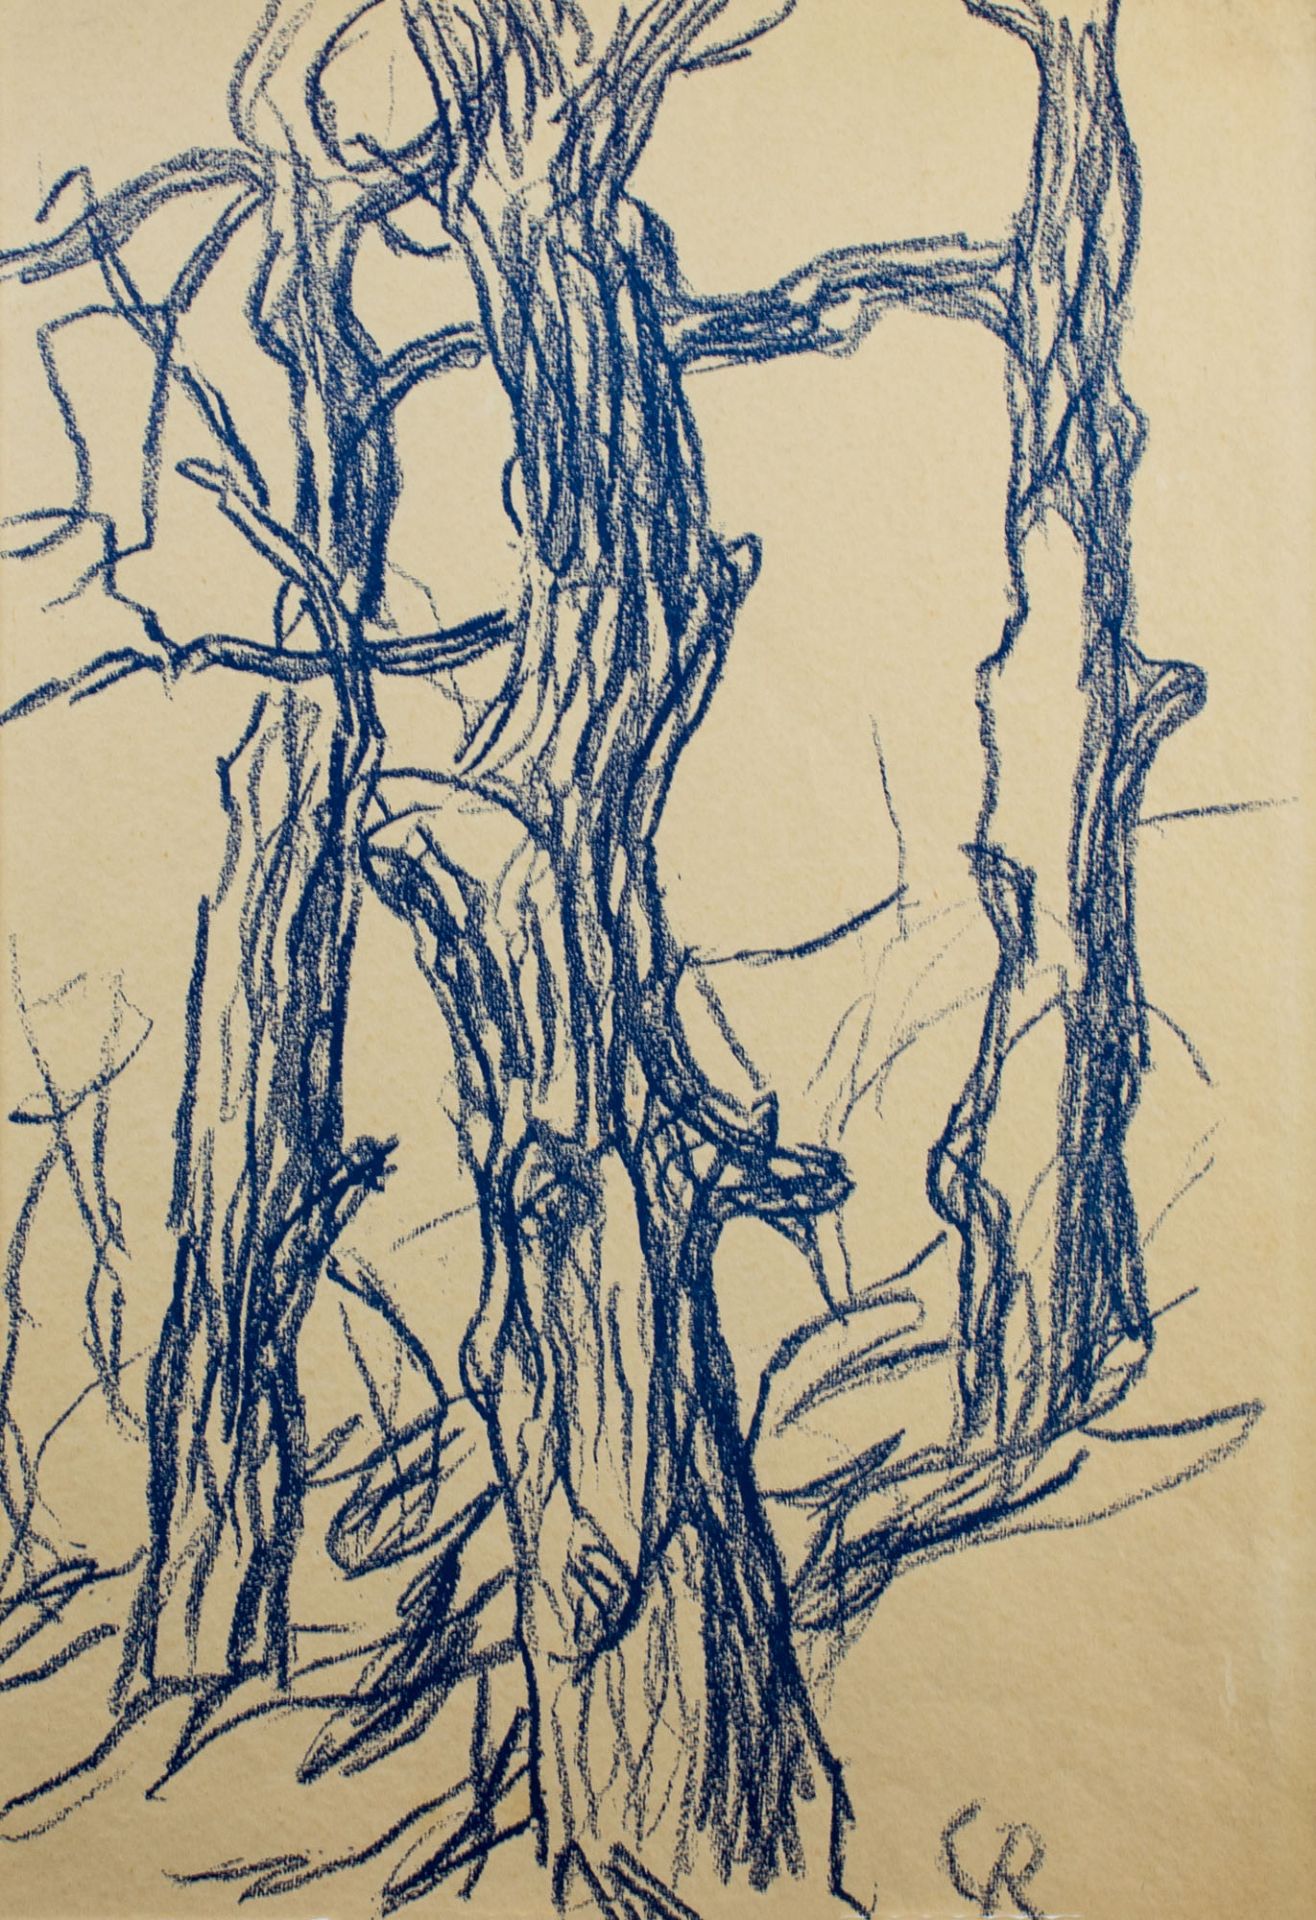 Christian Rohlfs (1849 Niendorf - 1938 Hagen)Bäume, Farbgrafik, auf Karton befestigt, 50 cm x 34